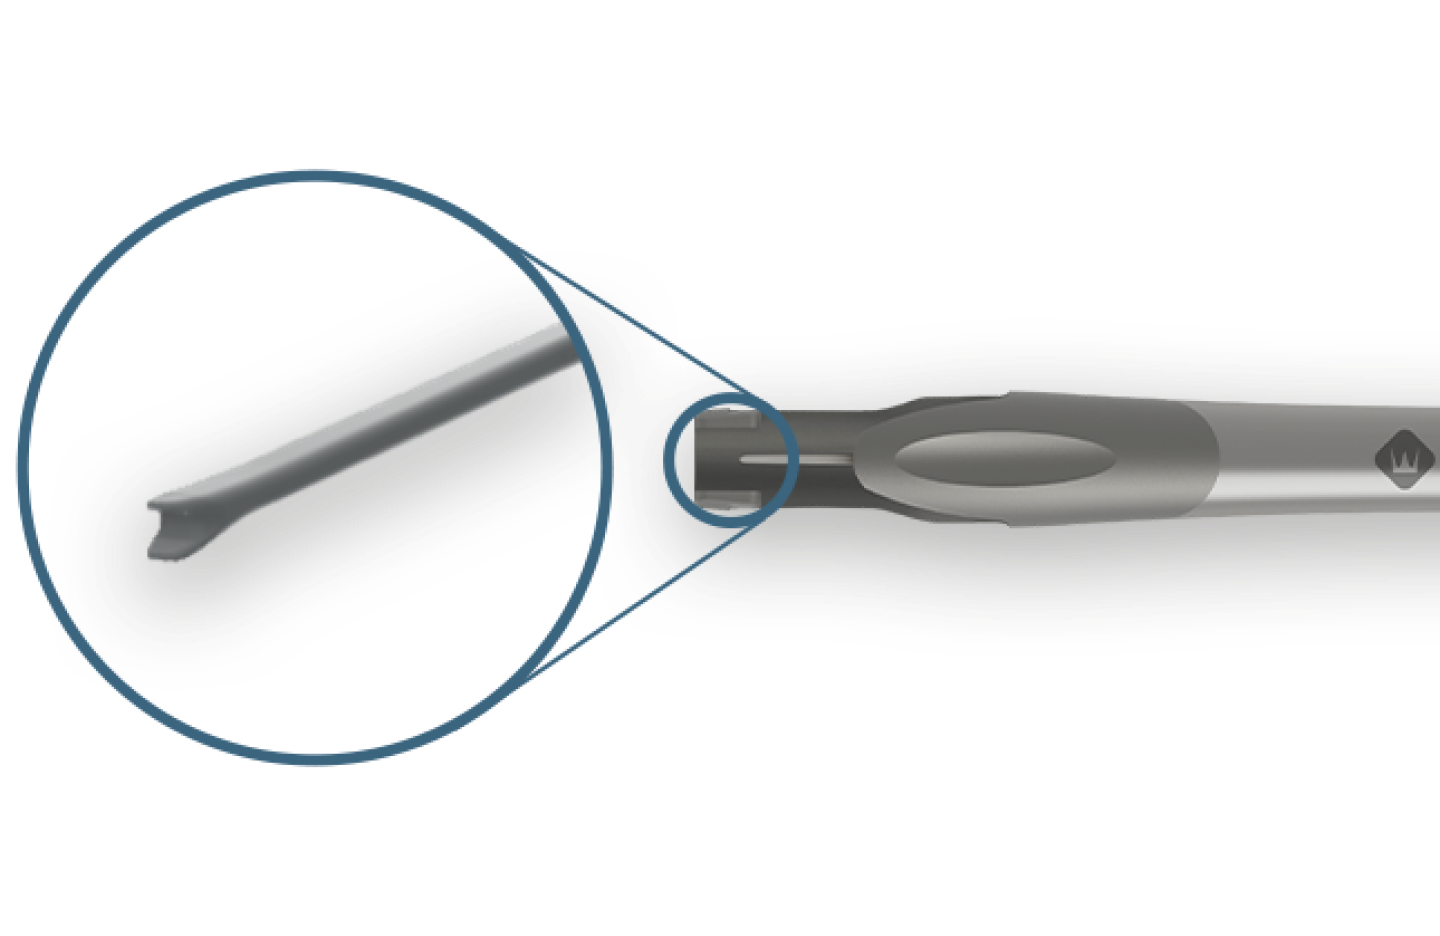 Pieza de mano Clareon Monarch IV en posición horizontal. Hay un círculo azul sobre el dispositivo para llamar la atención sobre la punta del émbolo.